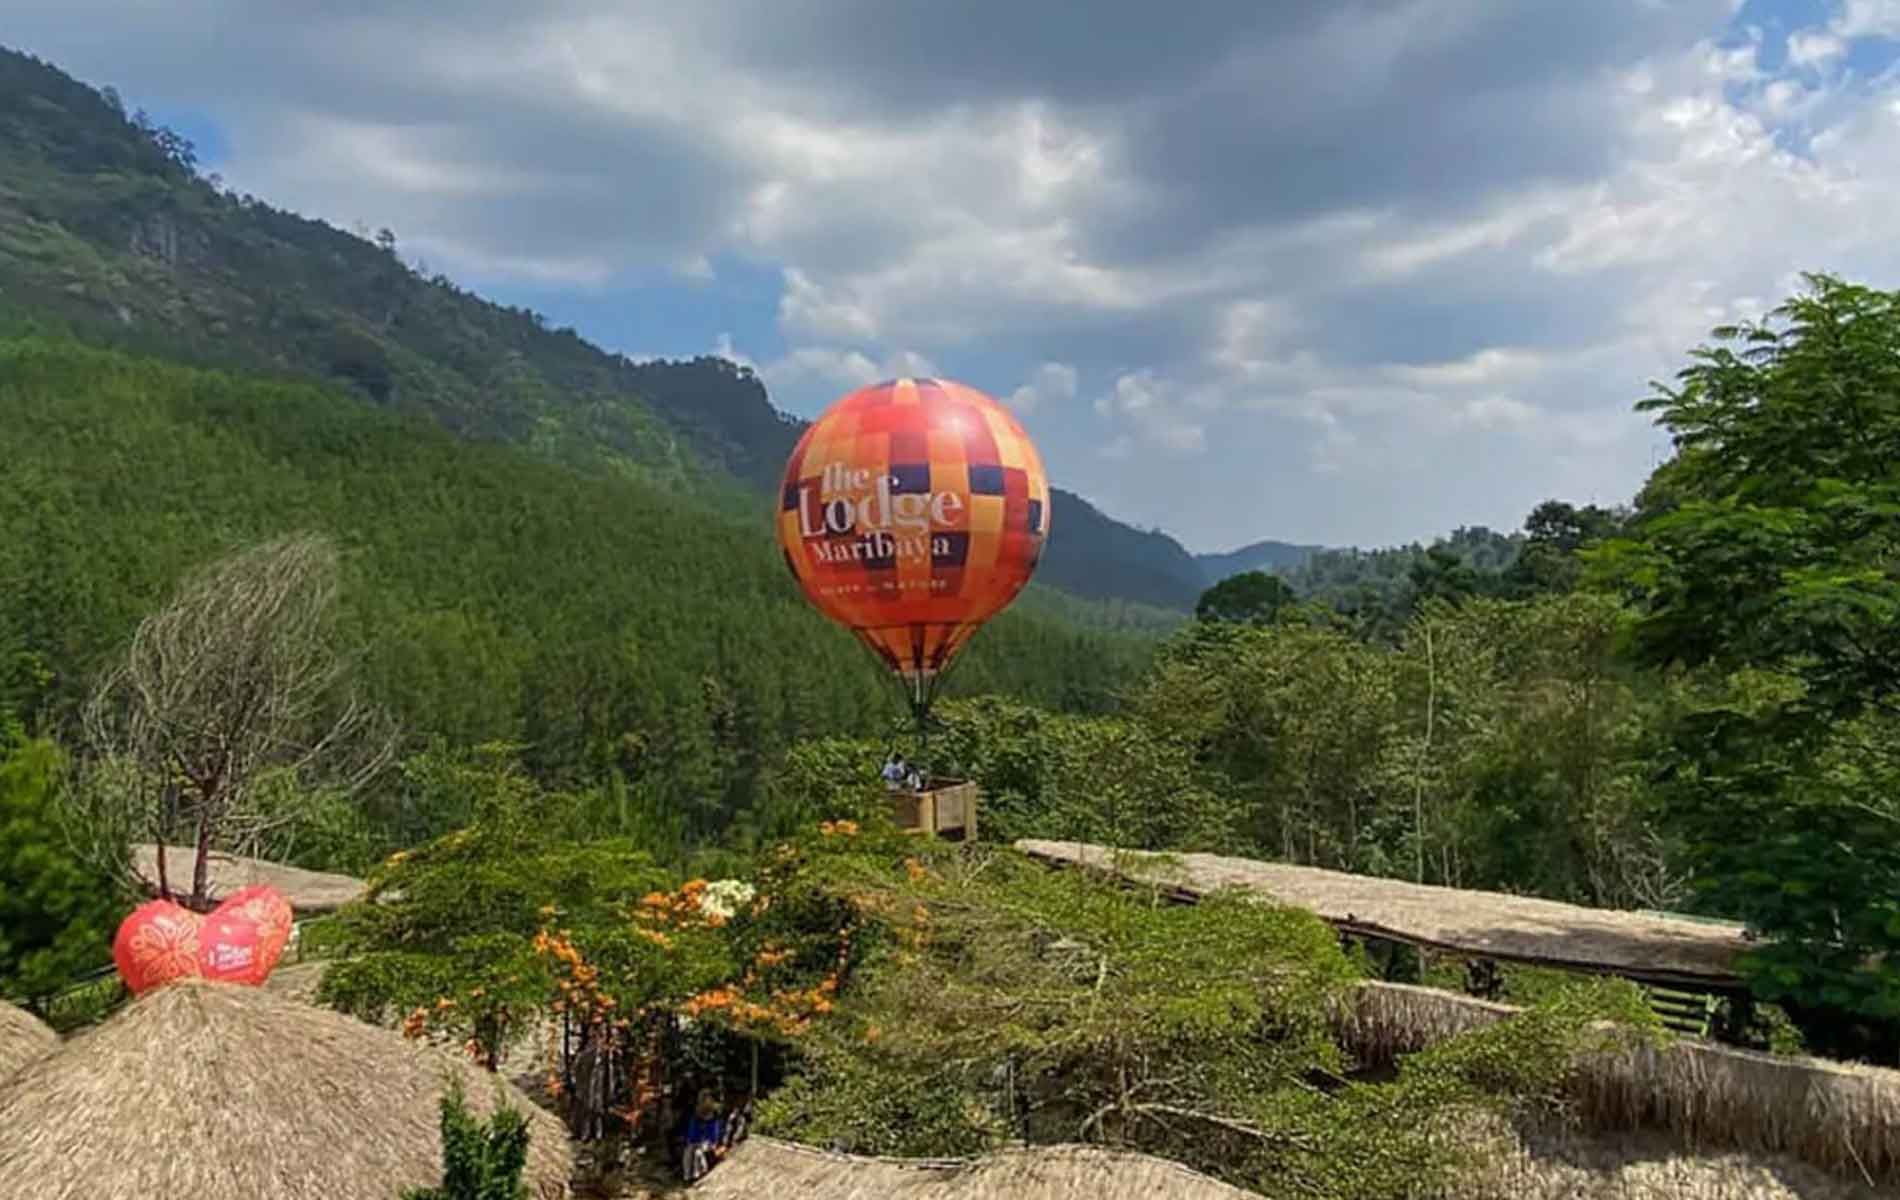 Balon Udara di The Lodge Maribaya, Bandung, Jawa Barat